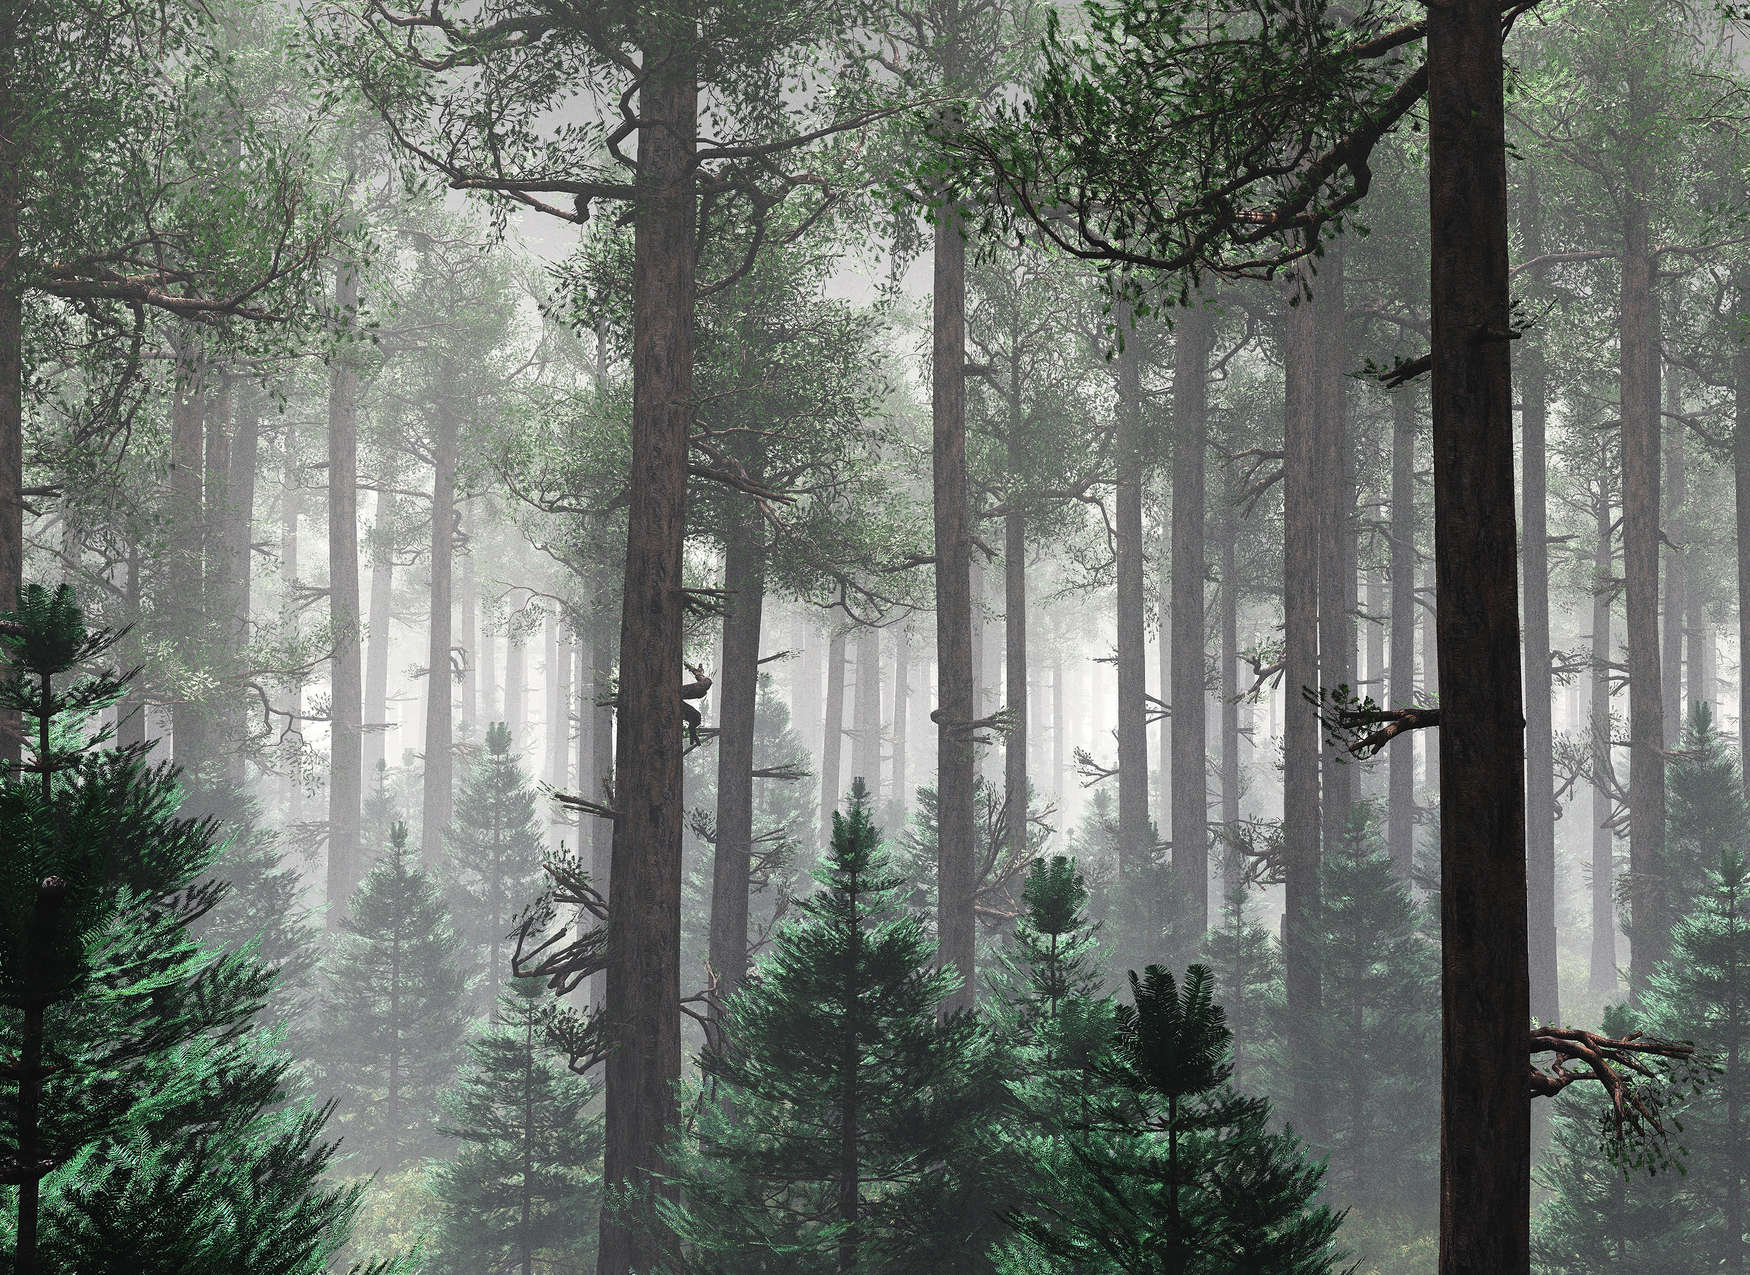             Fototapete Wald im Nebel mit großen Bäumen – Grün, Braun, Grau
        